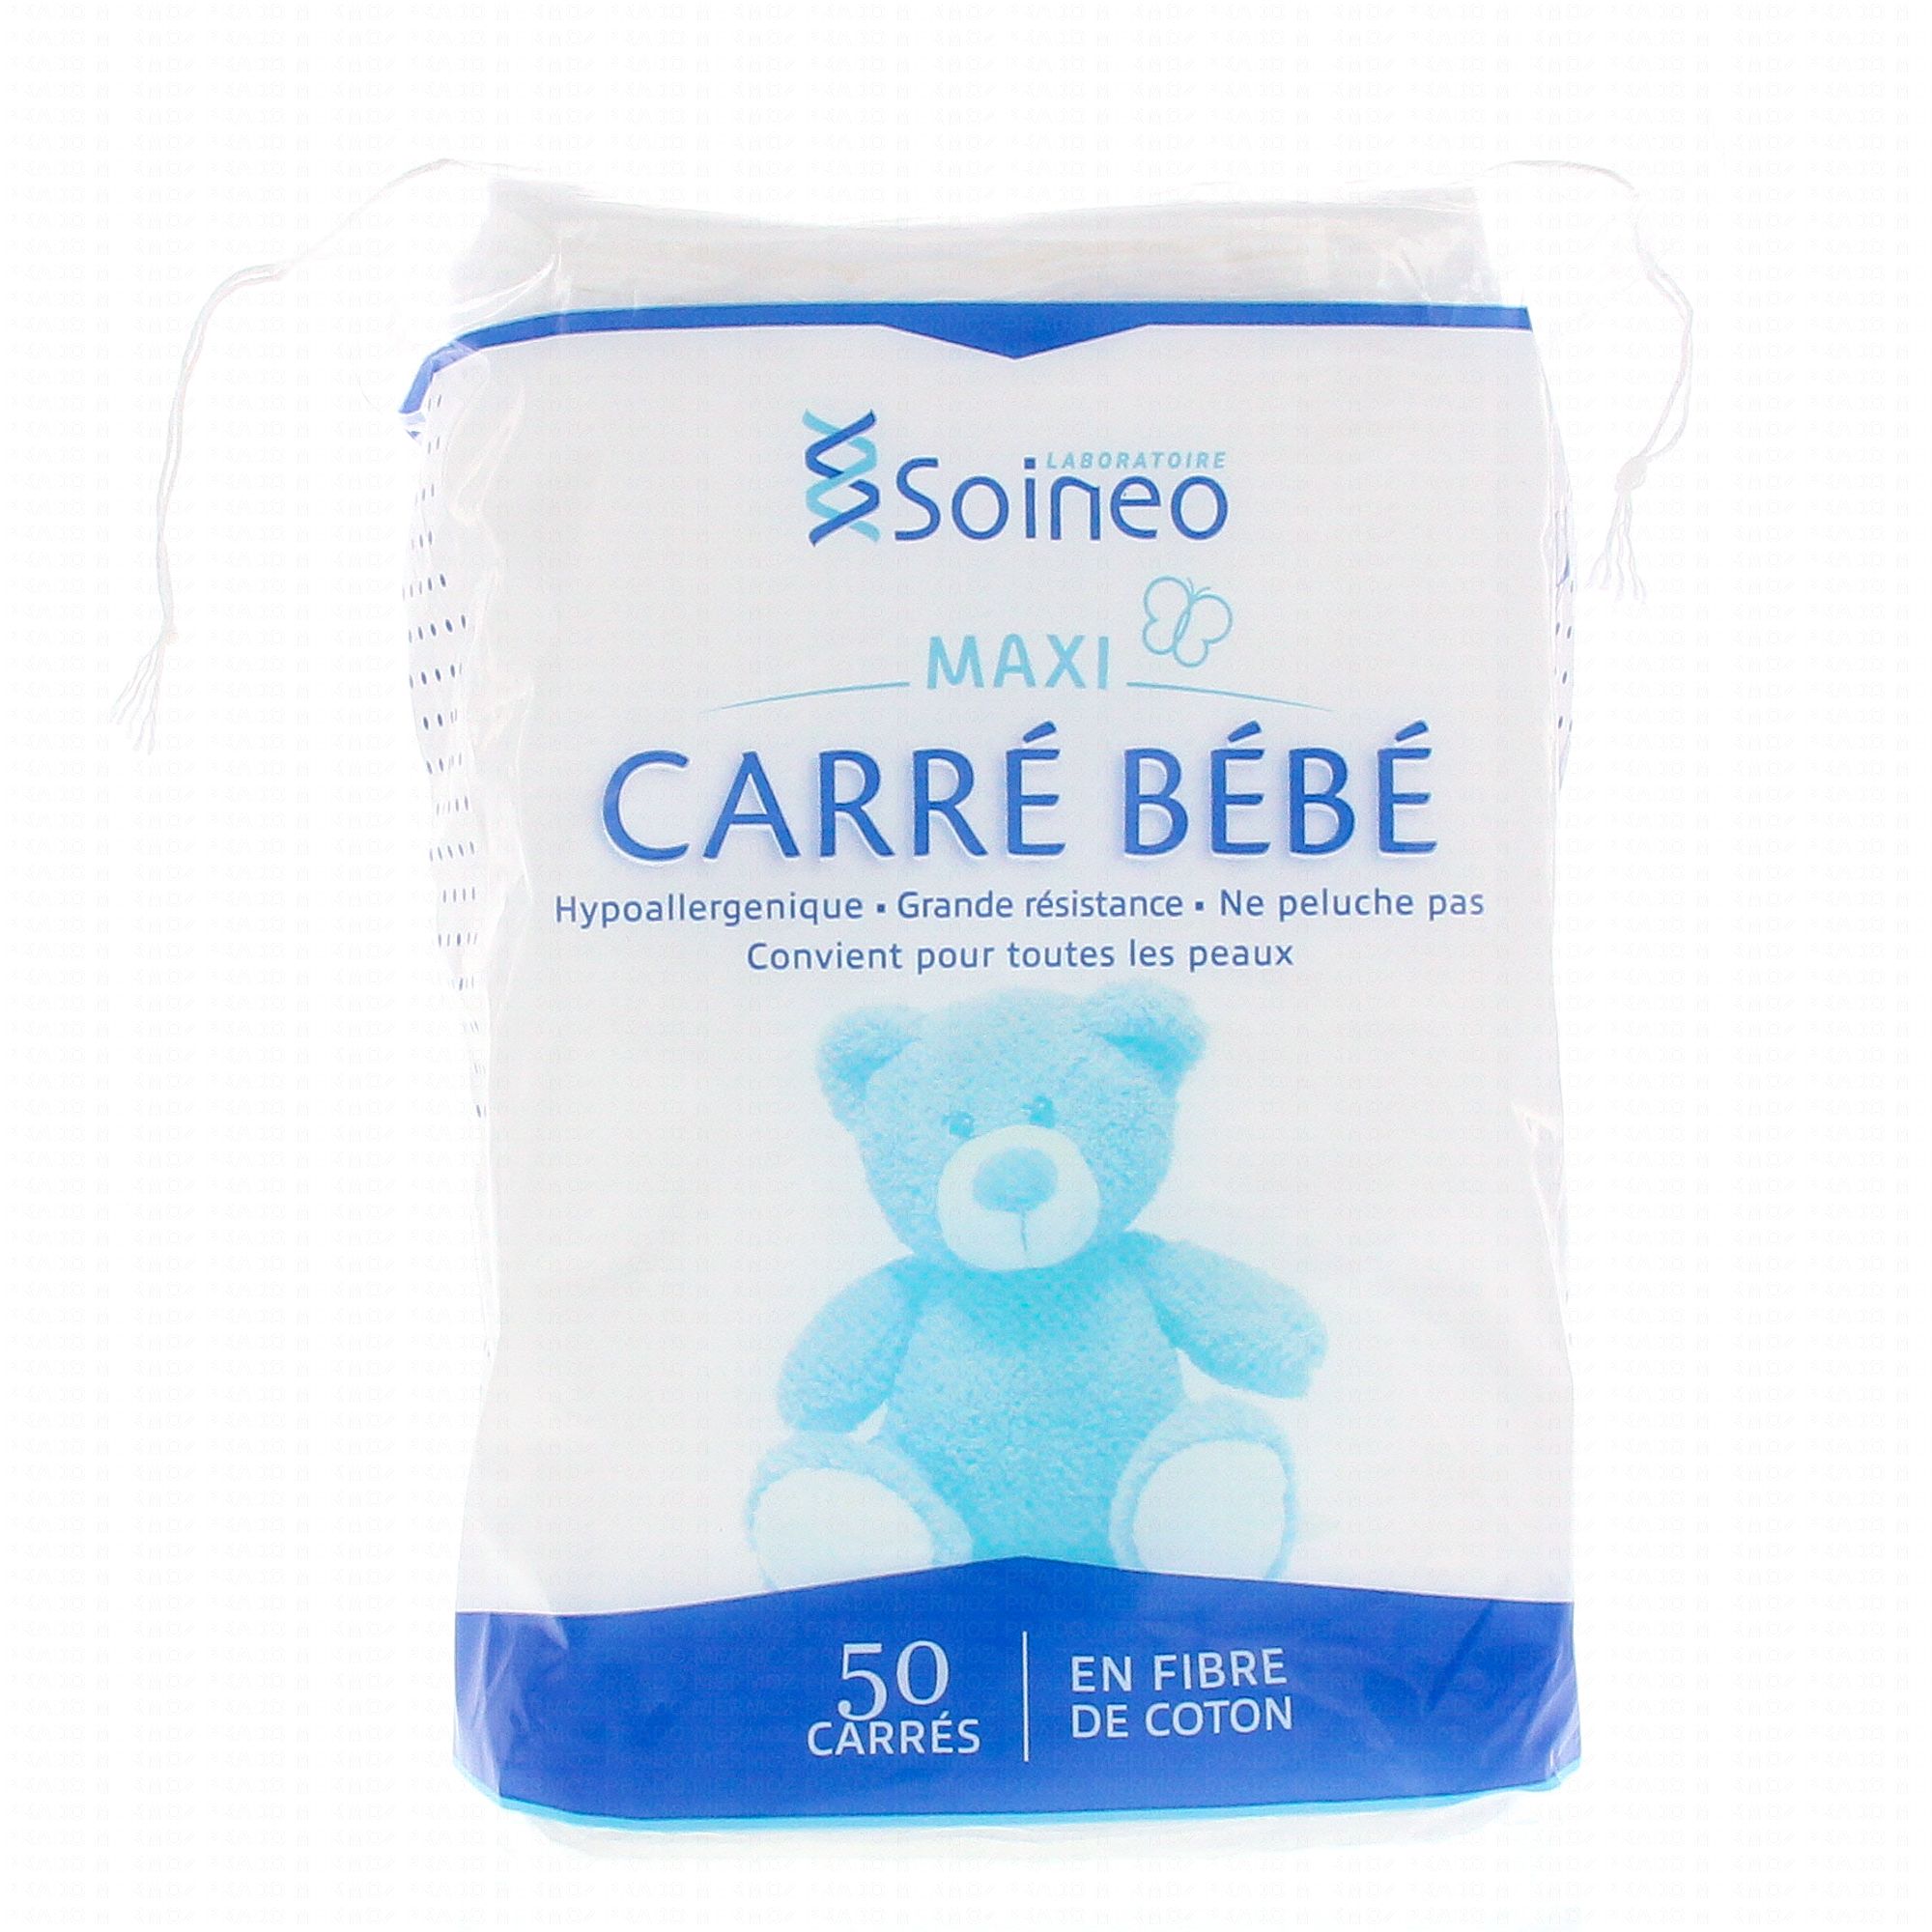 SOINEO Carré coton bébé Maxi x50 - Parapharmacie Prado Mermoz